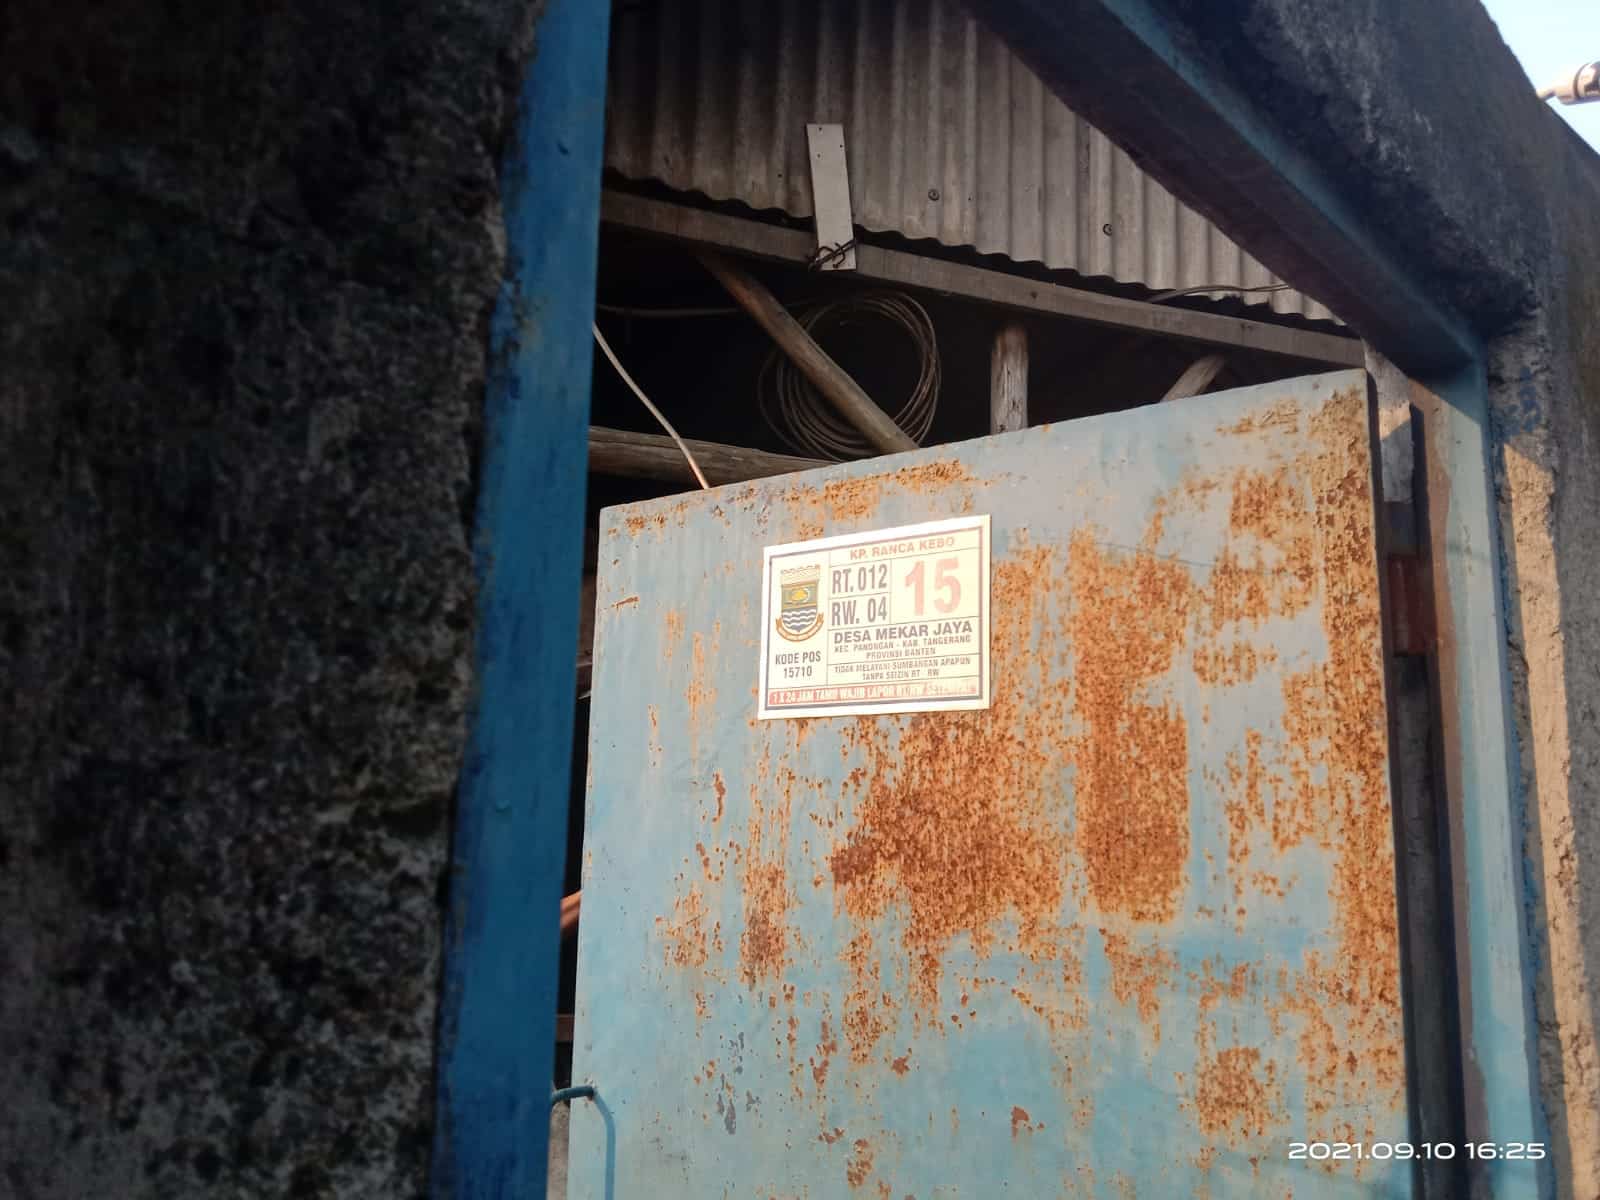 Diduga Tidak Berizin, Perusahaan Peleburan Alumunium di Ranca Kebo Tetap Beroperasi